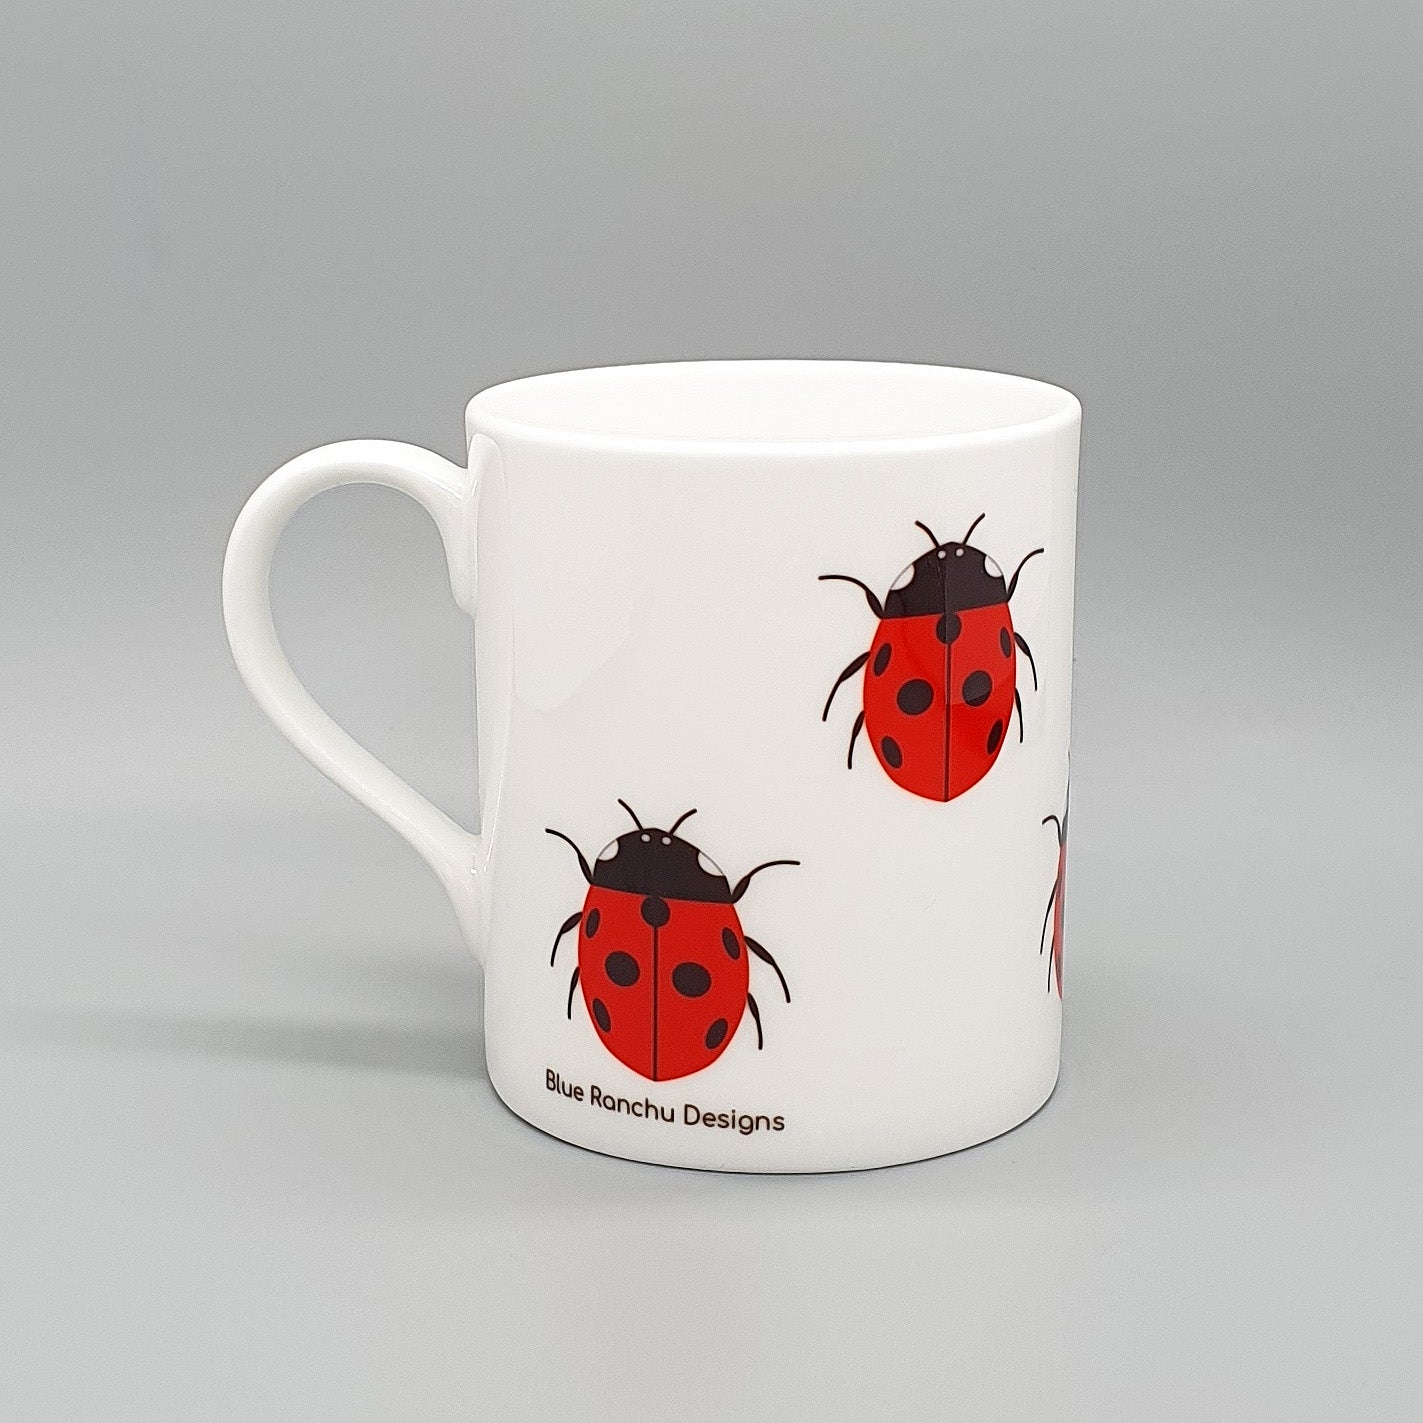 Ladybird bone china mug